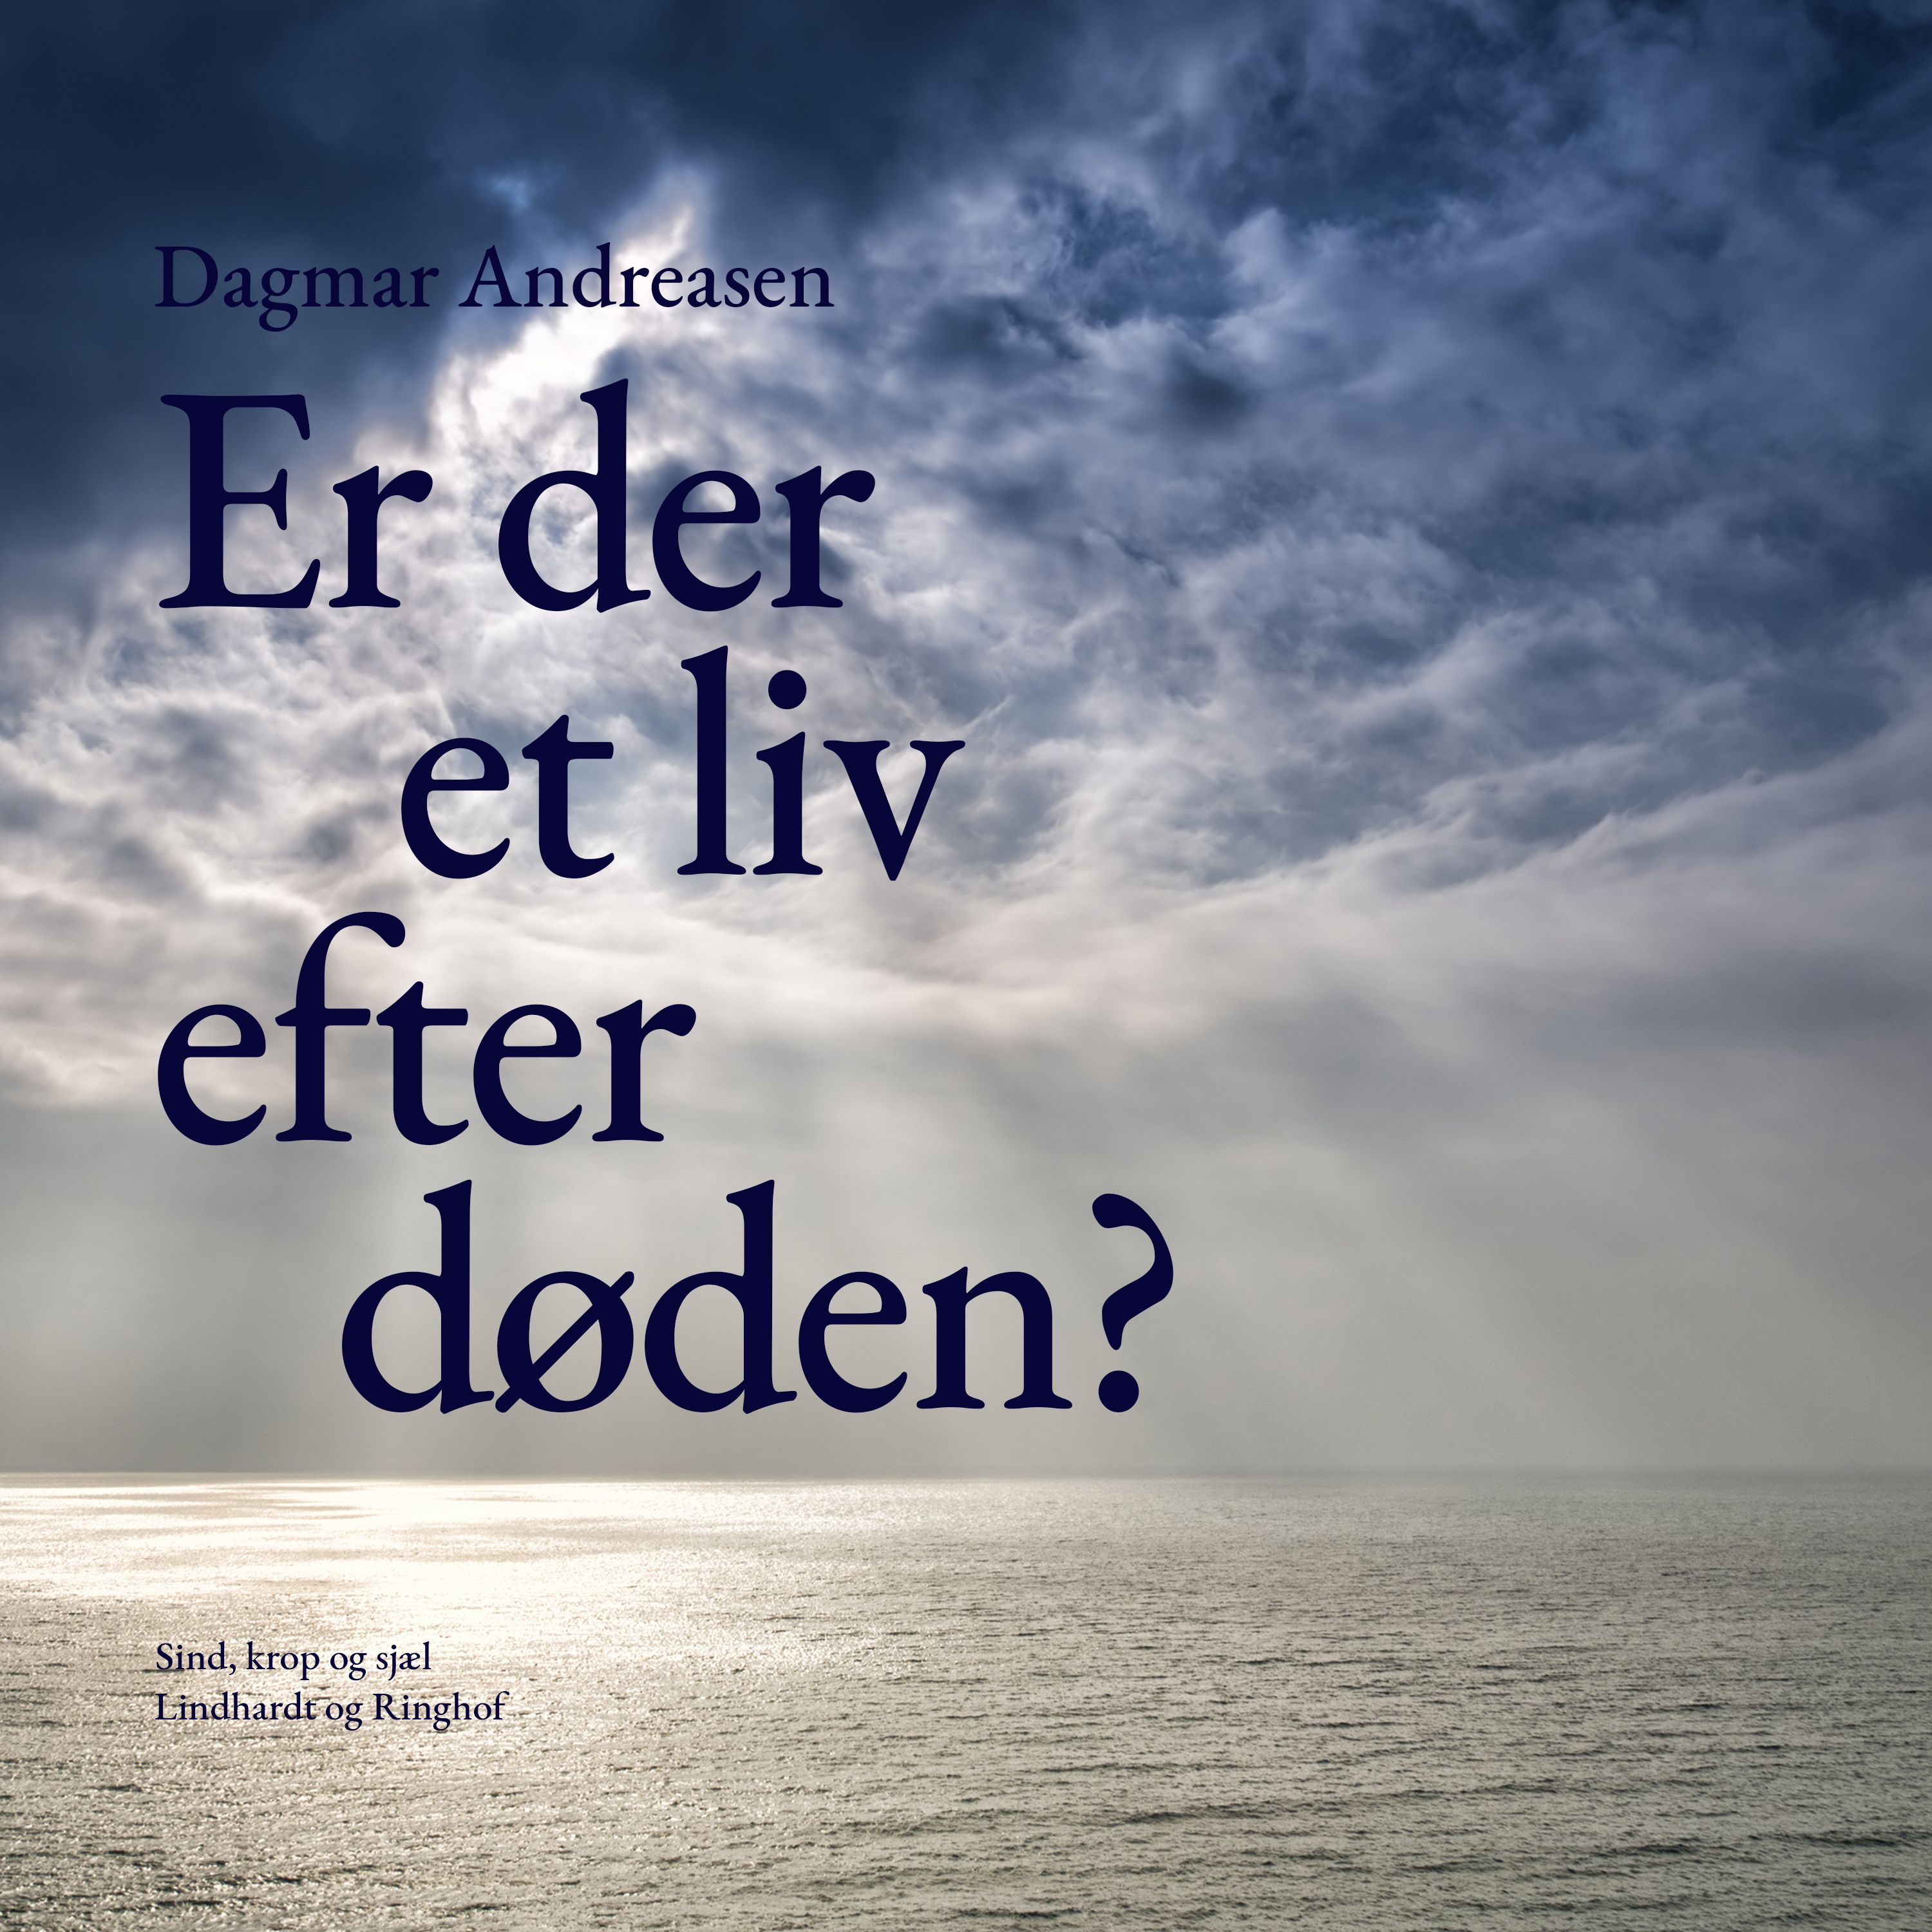 Er der et liv efter døden?, ljudbok av Dagmar Andreasen